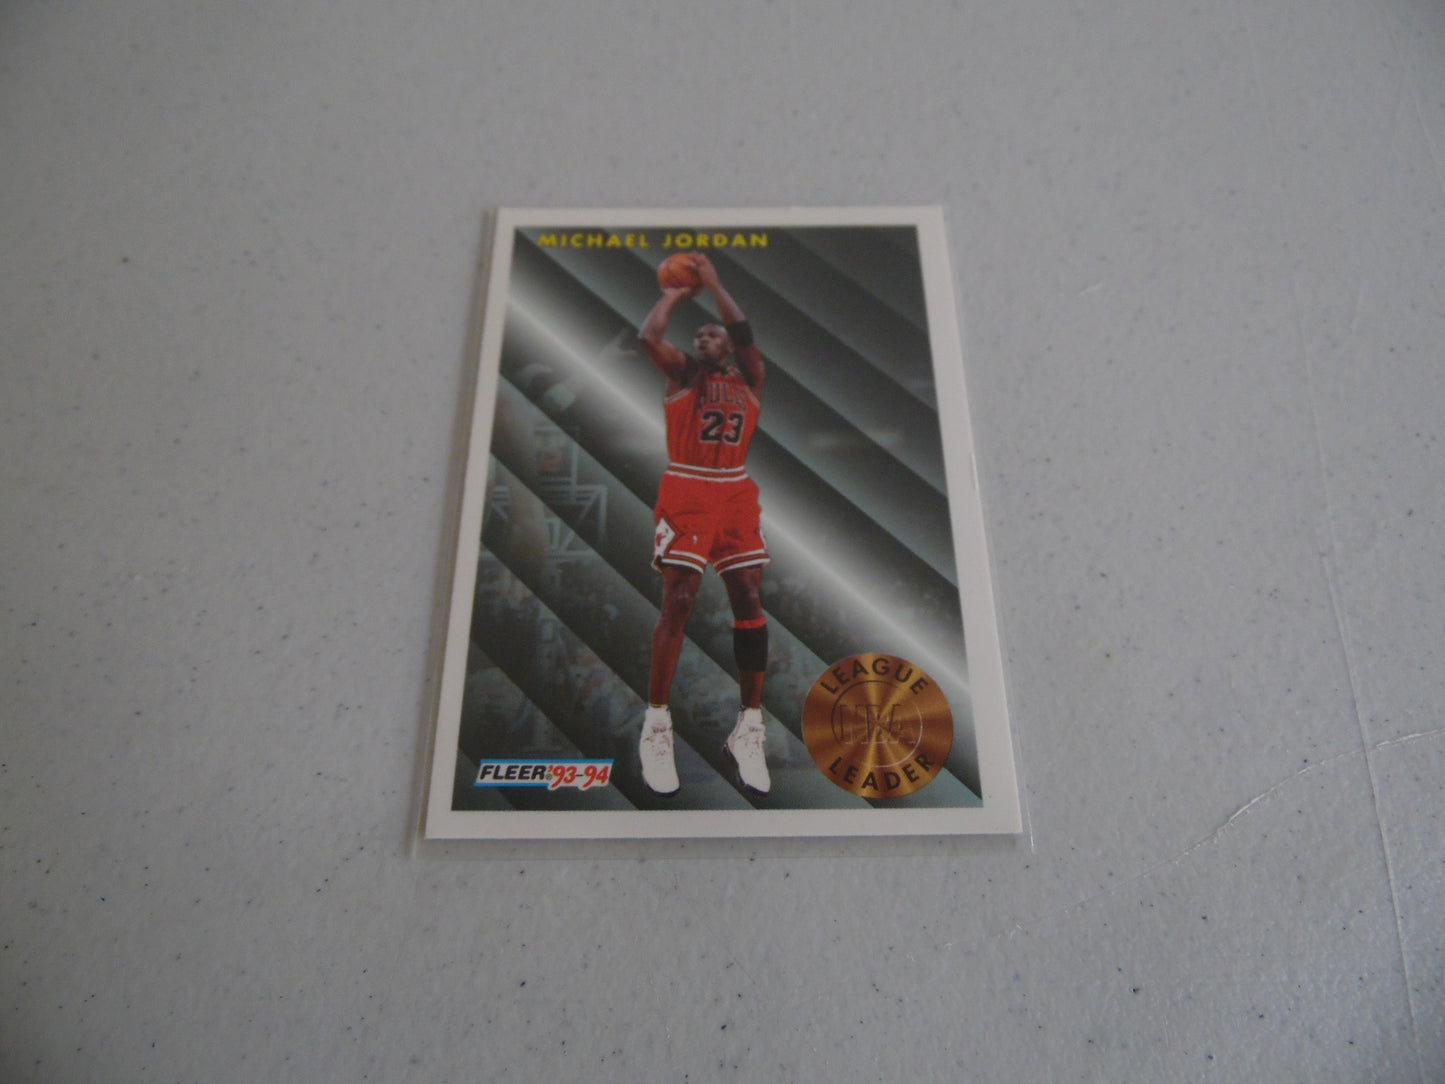 Vintage 1993-94 Michael Jordan Fleer League Leader Sports Card